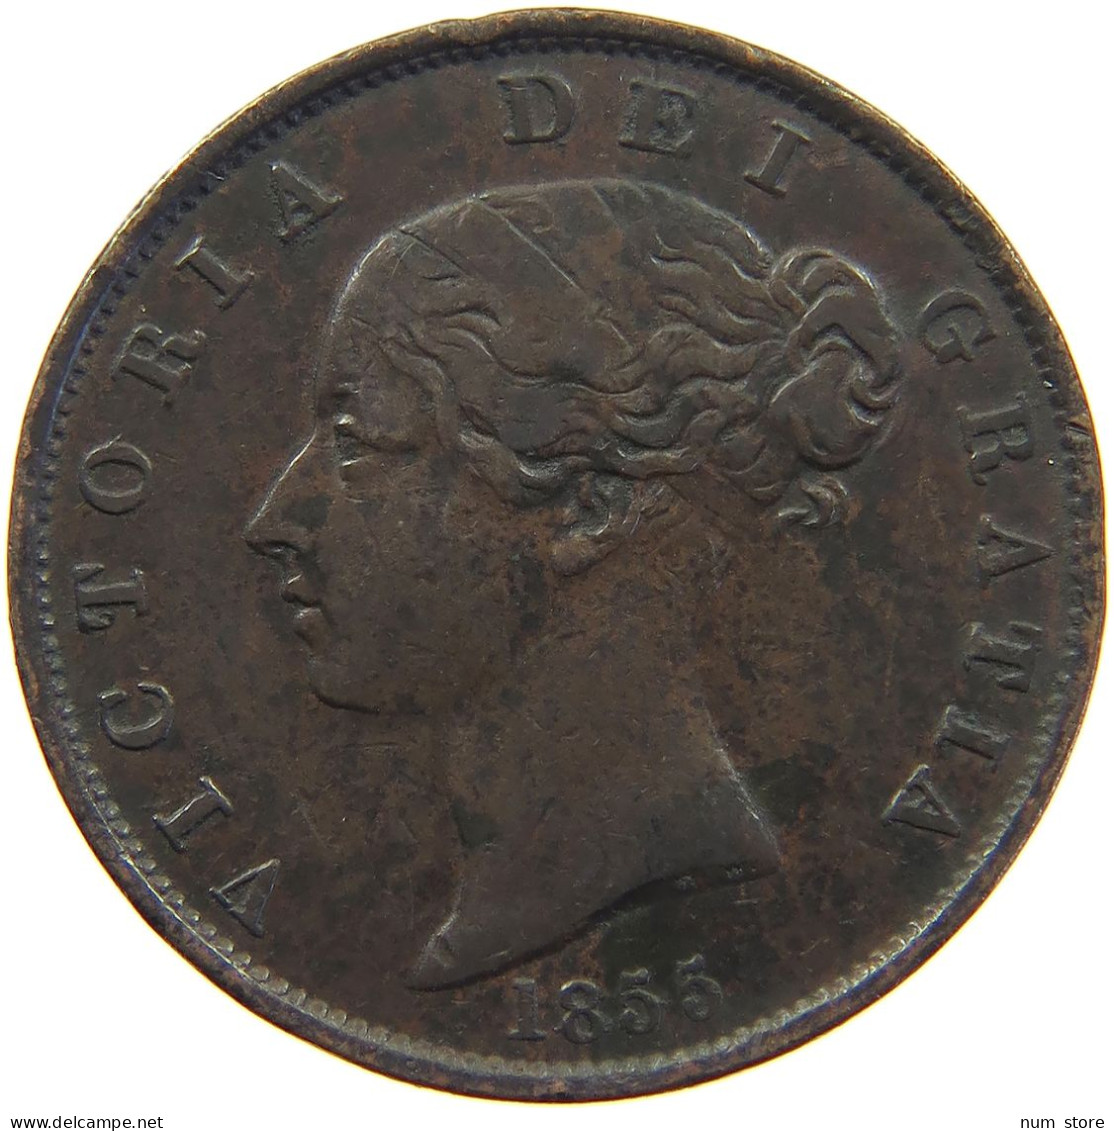 GREAT BRITAIN HALFPENNY 1855 Victoria 1837-1901 #c046 0075 - C. 1/2 Penny